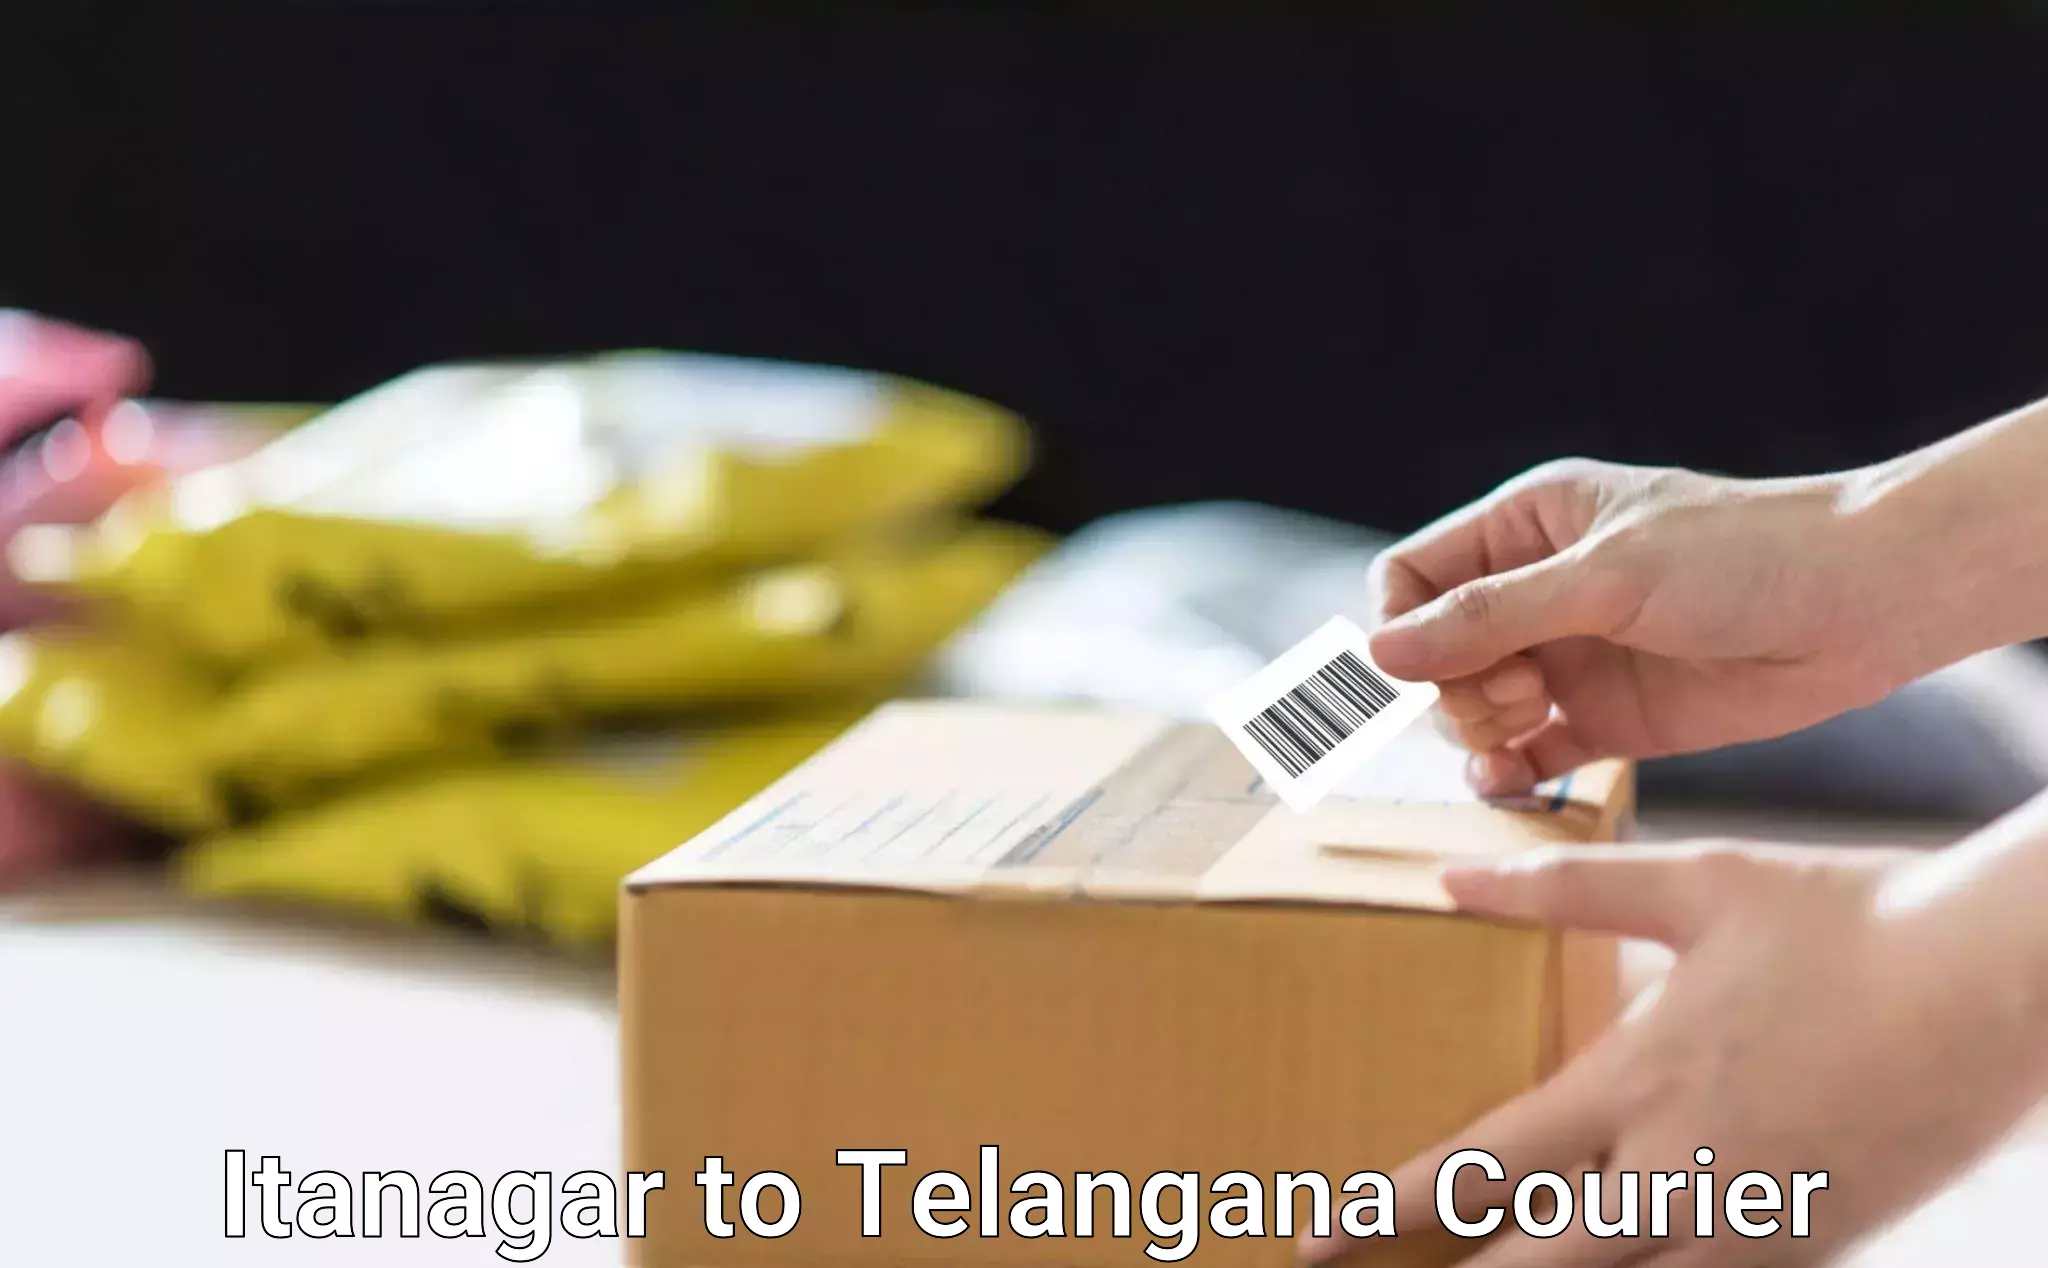 Courier service comparison Itanagar to Kosgi